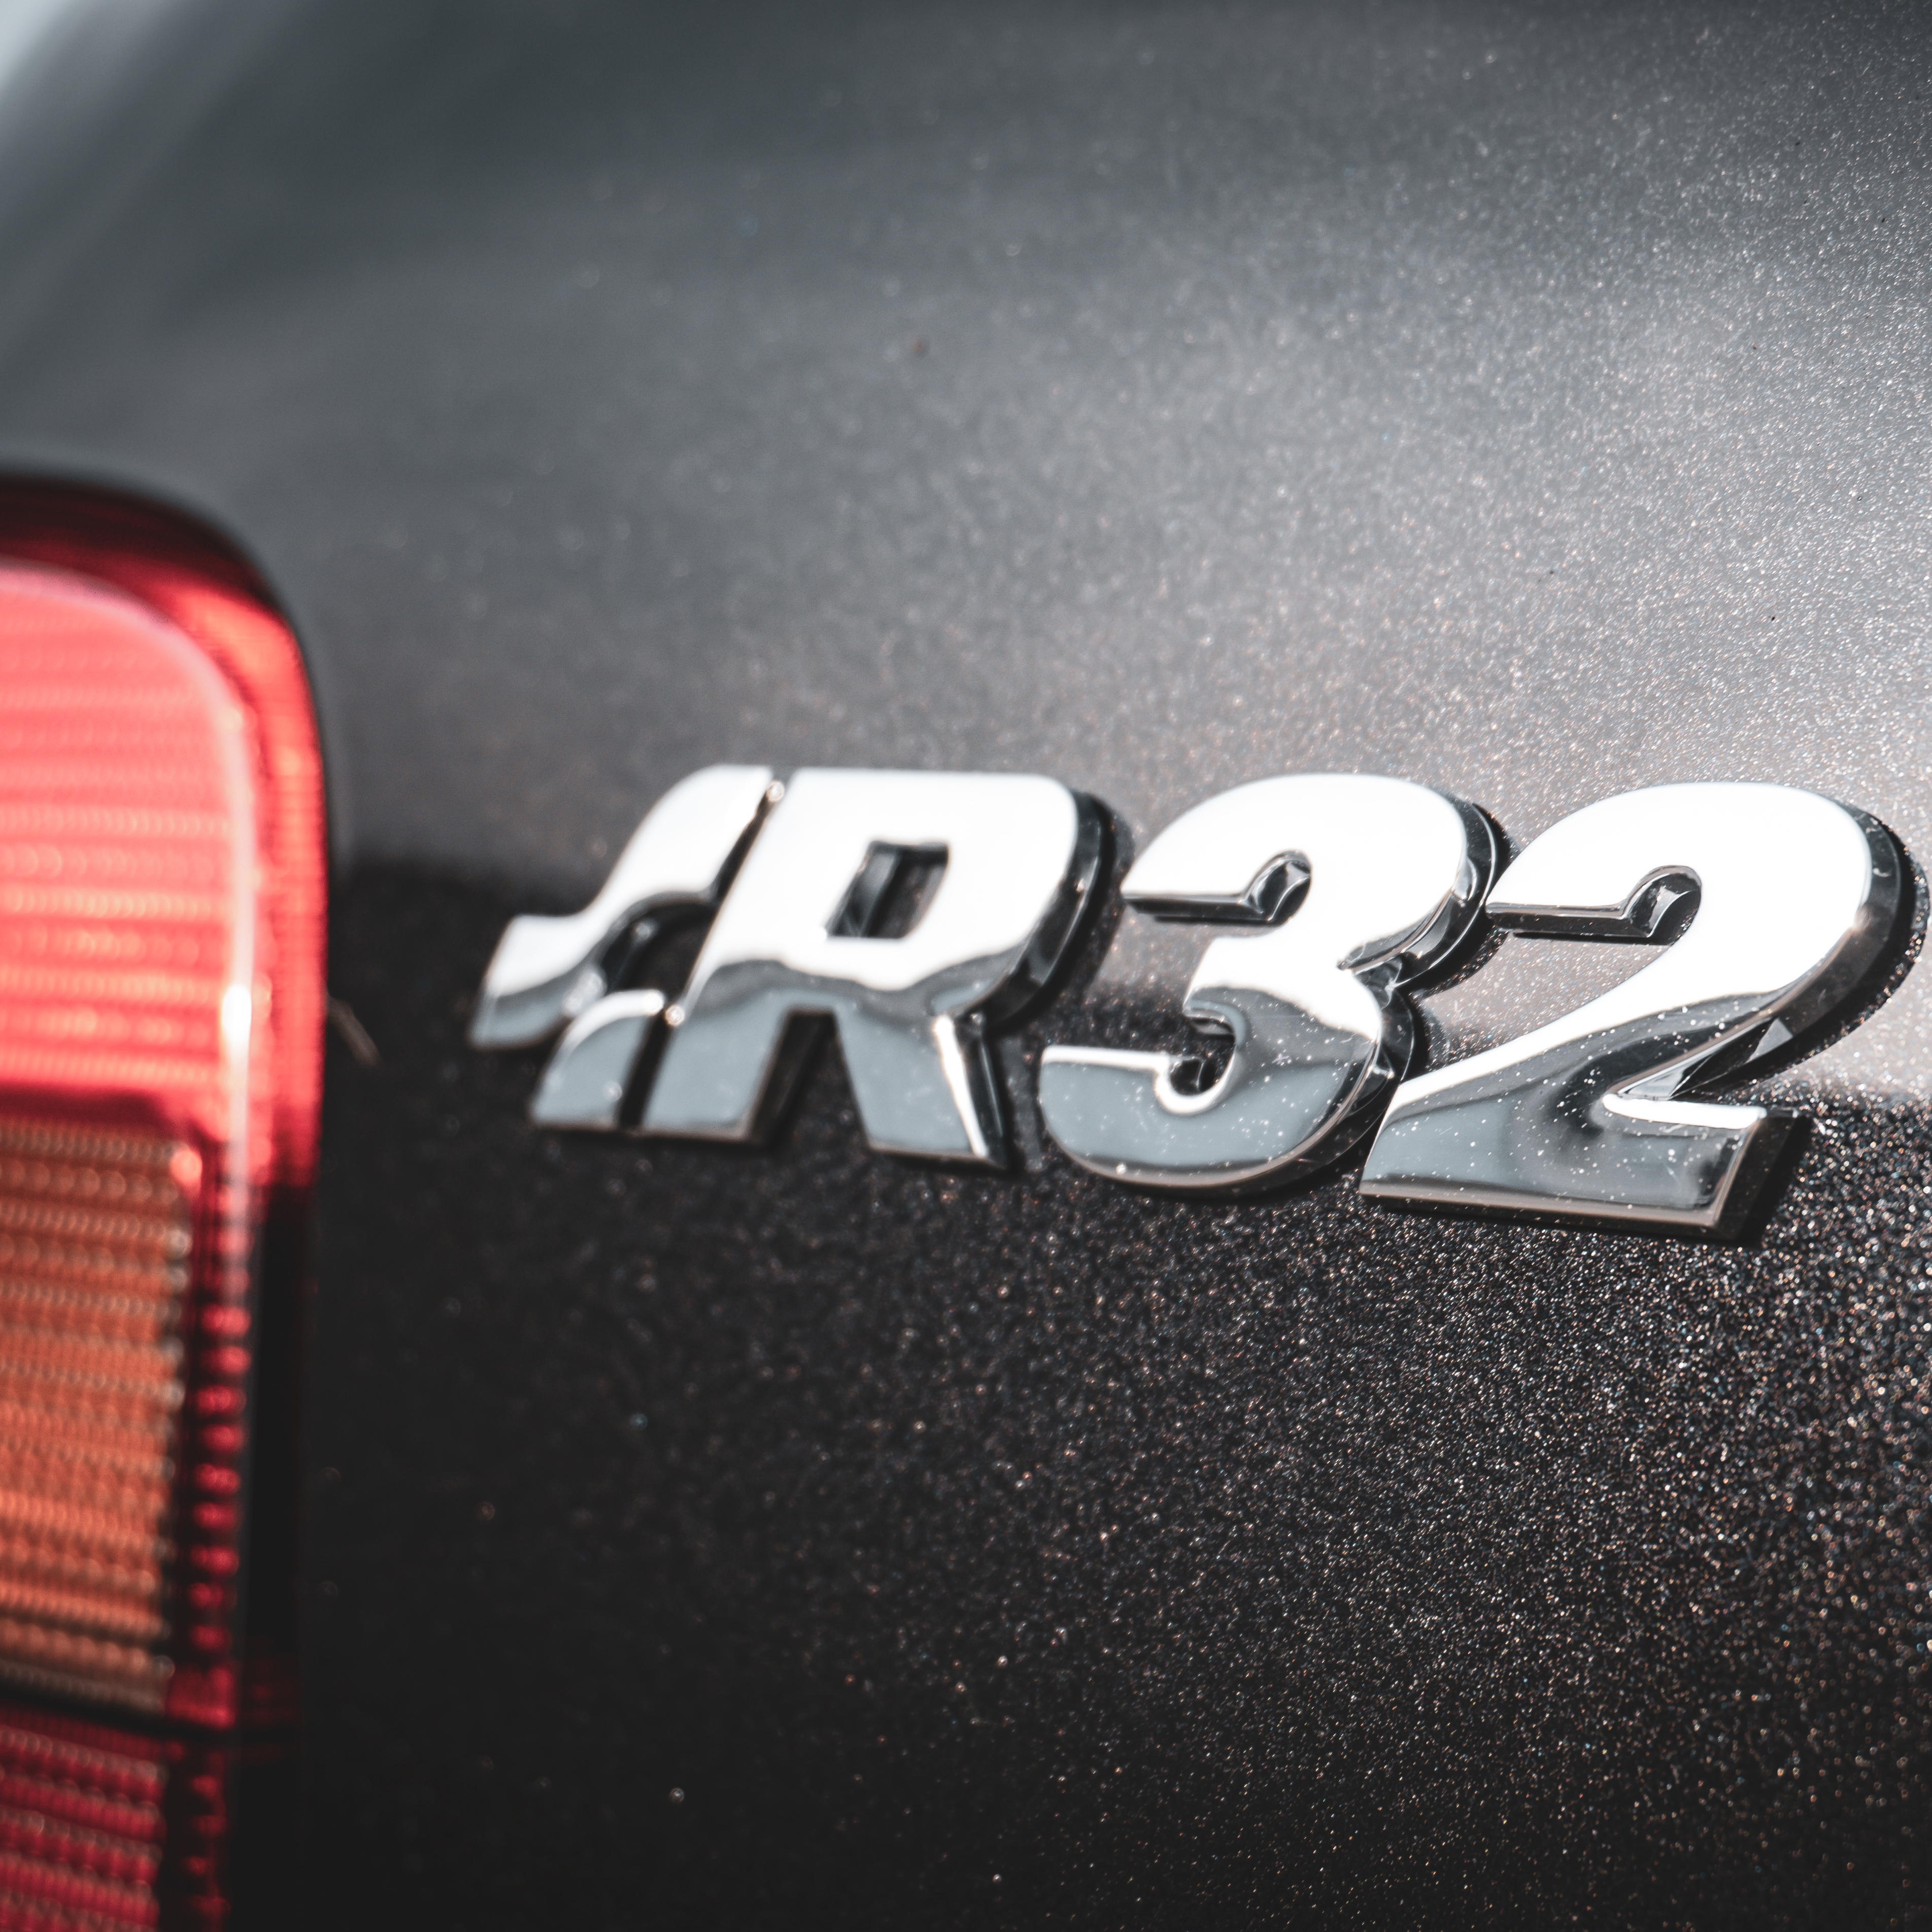 Neufertigungen für den Golf 4 R32: Starkes Engagement für einen starken Golf